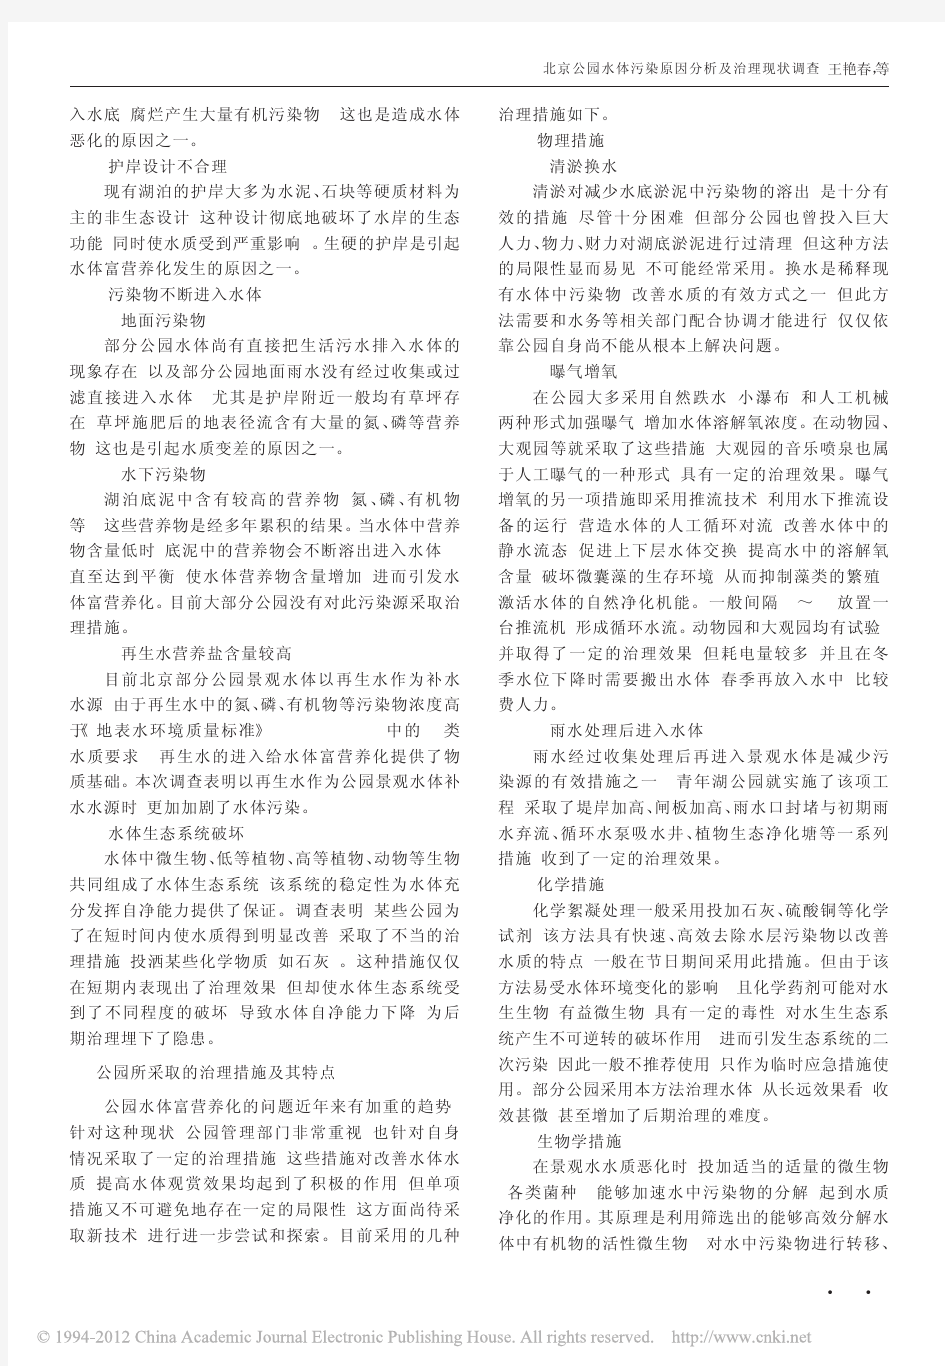 北京公园水体污染原因分析及治理现状调查_王艳春